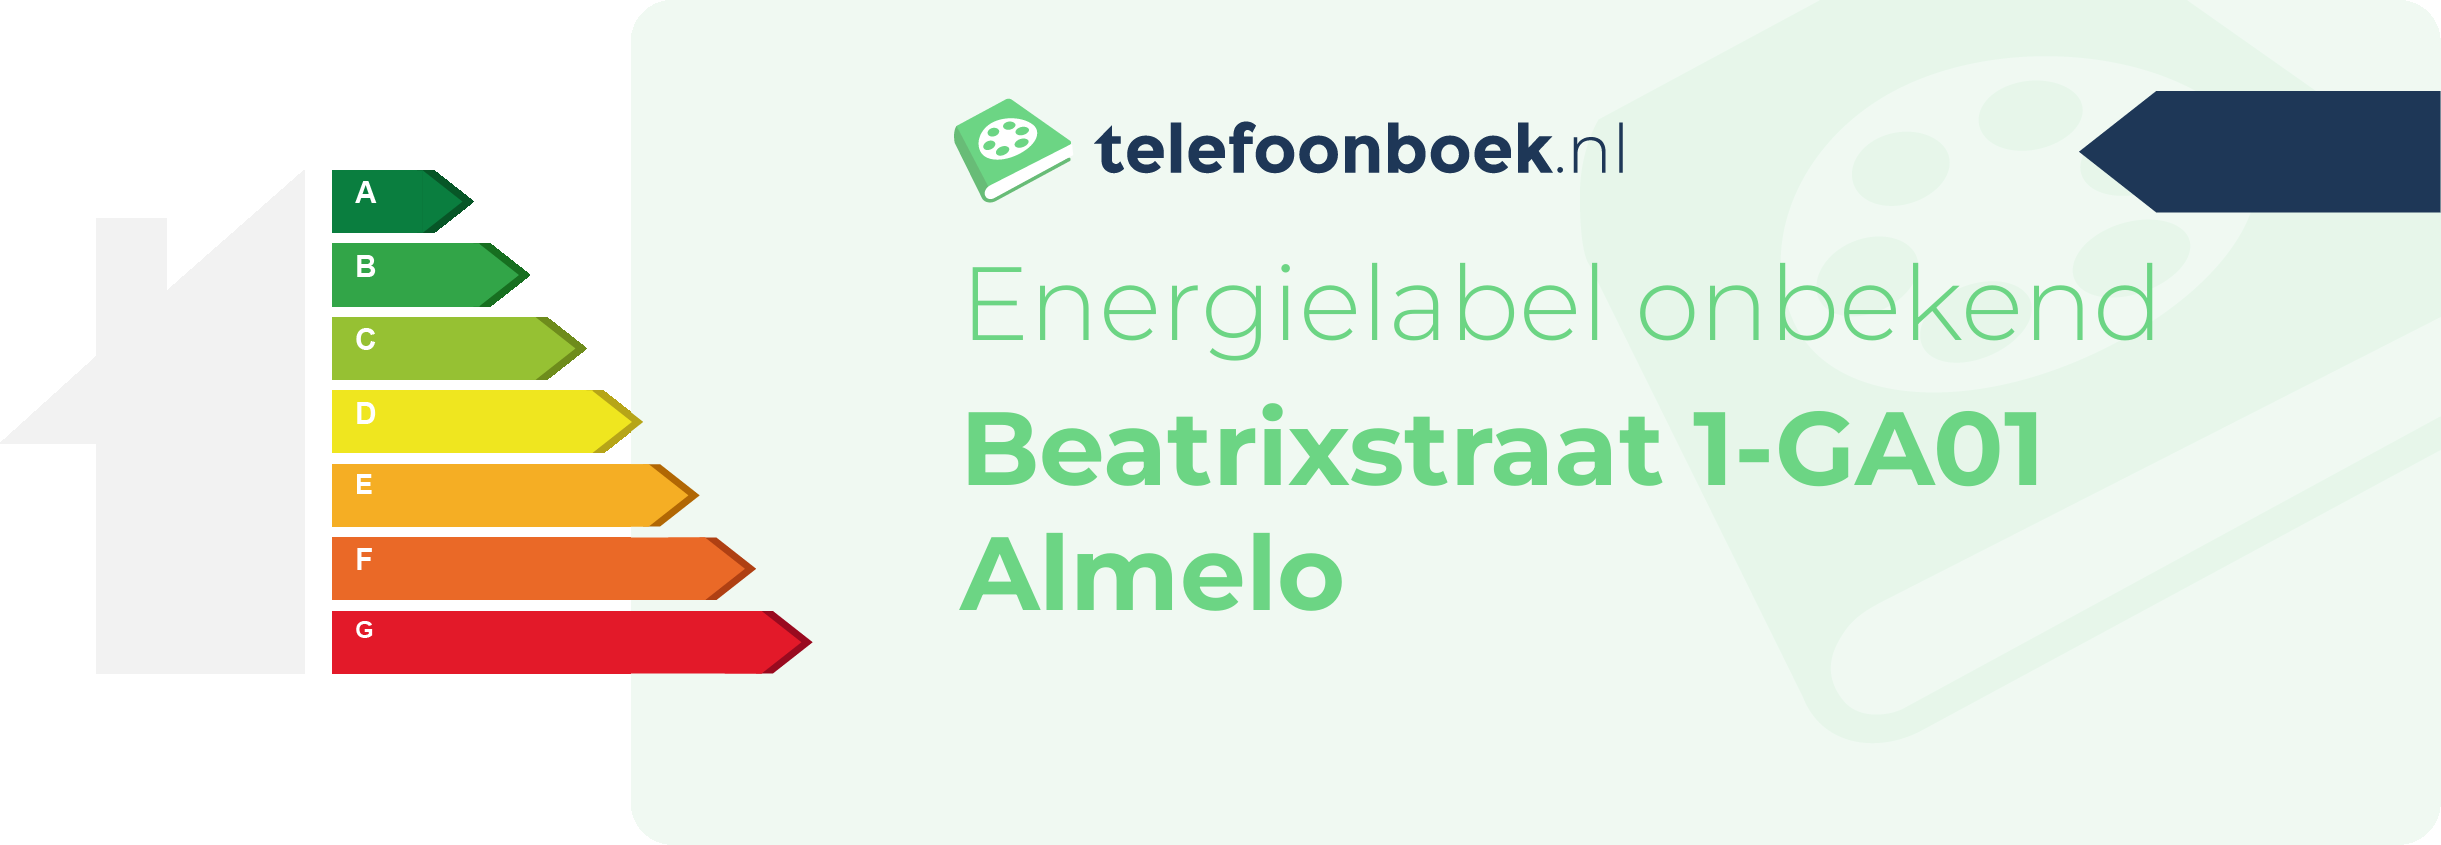 Energielabel Beatrixstraat 1-GA01 Almelo